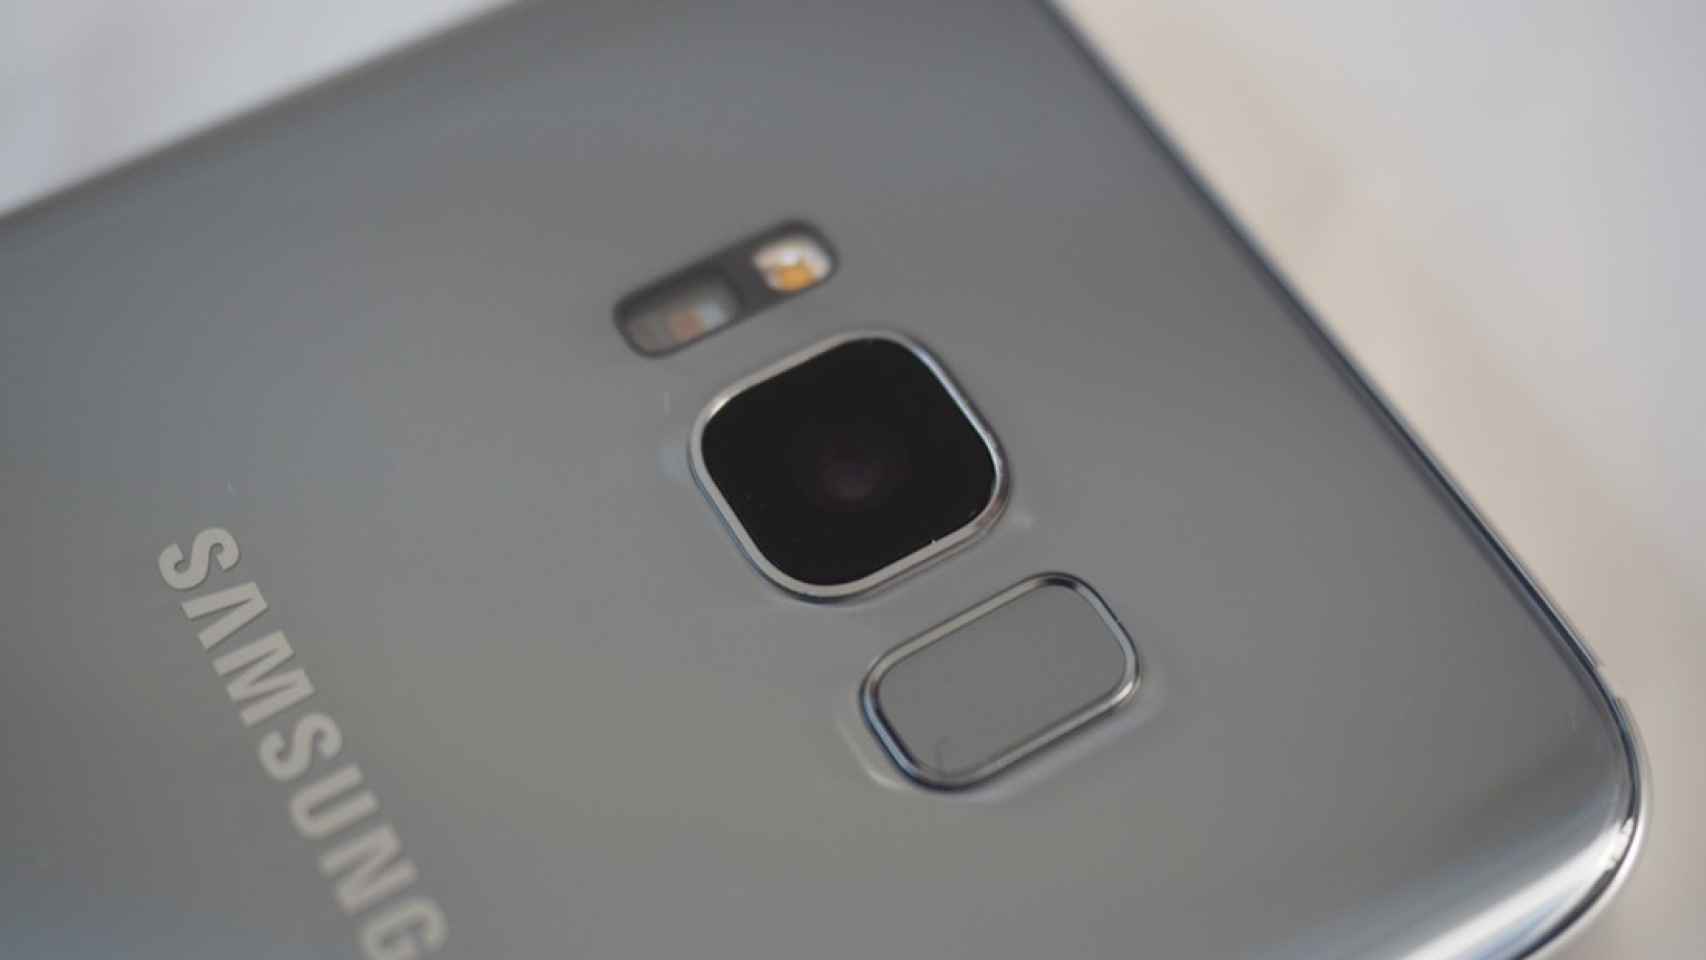 Samsung Galaxy Note 8: cámara dual y pantalla de 6.4 pulgadas sus últimos rumores